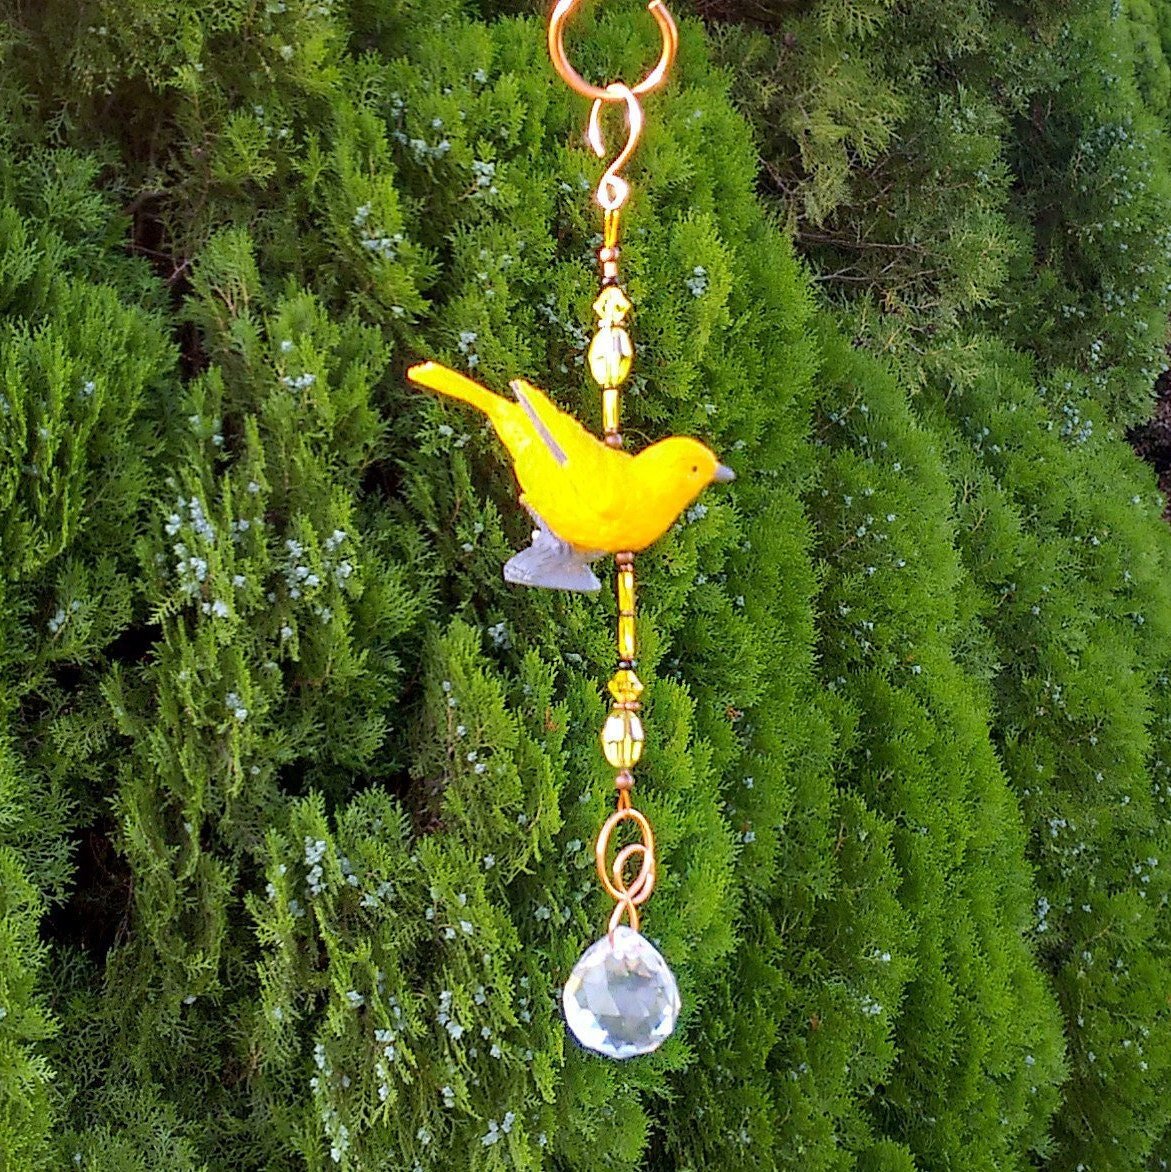 Handcrafted yellow warbler songbird sun catcher garden ornament